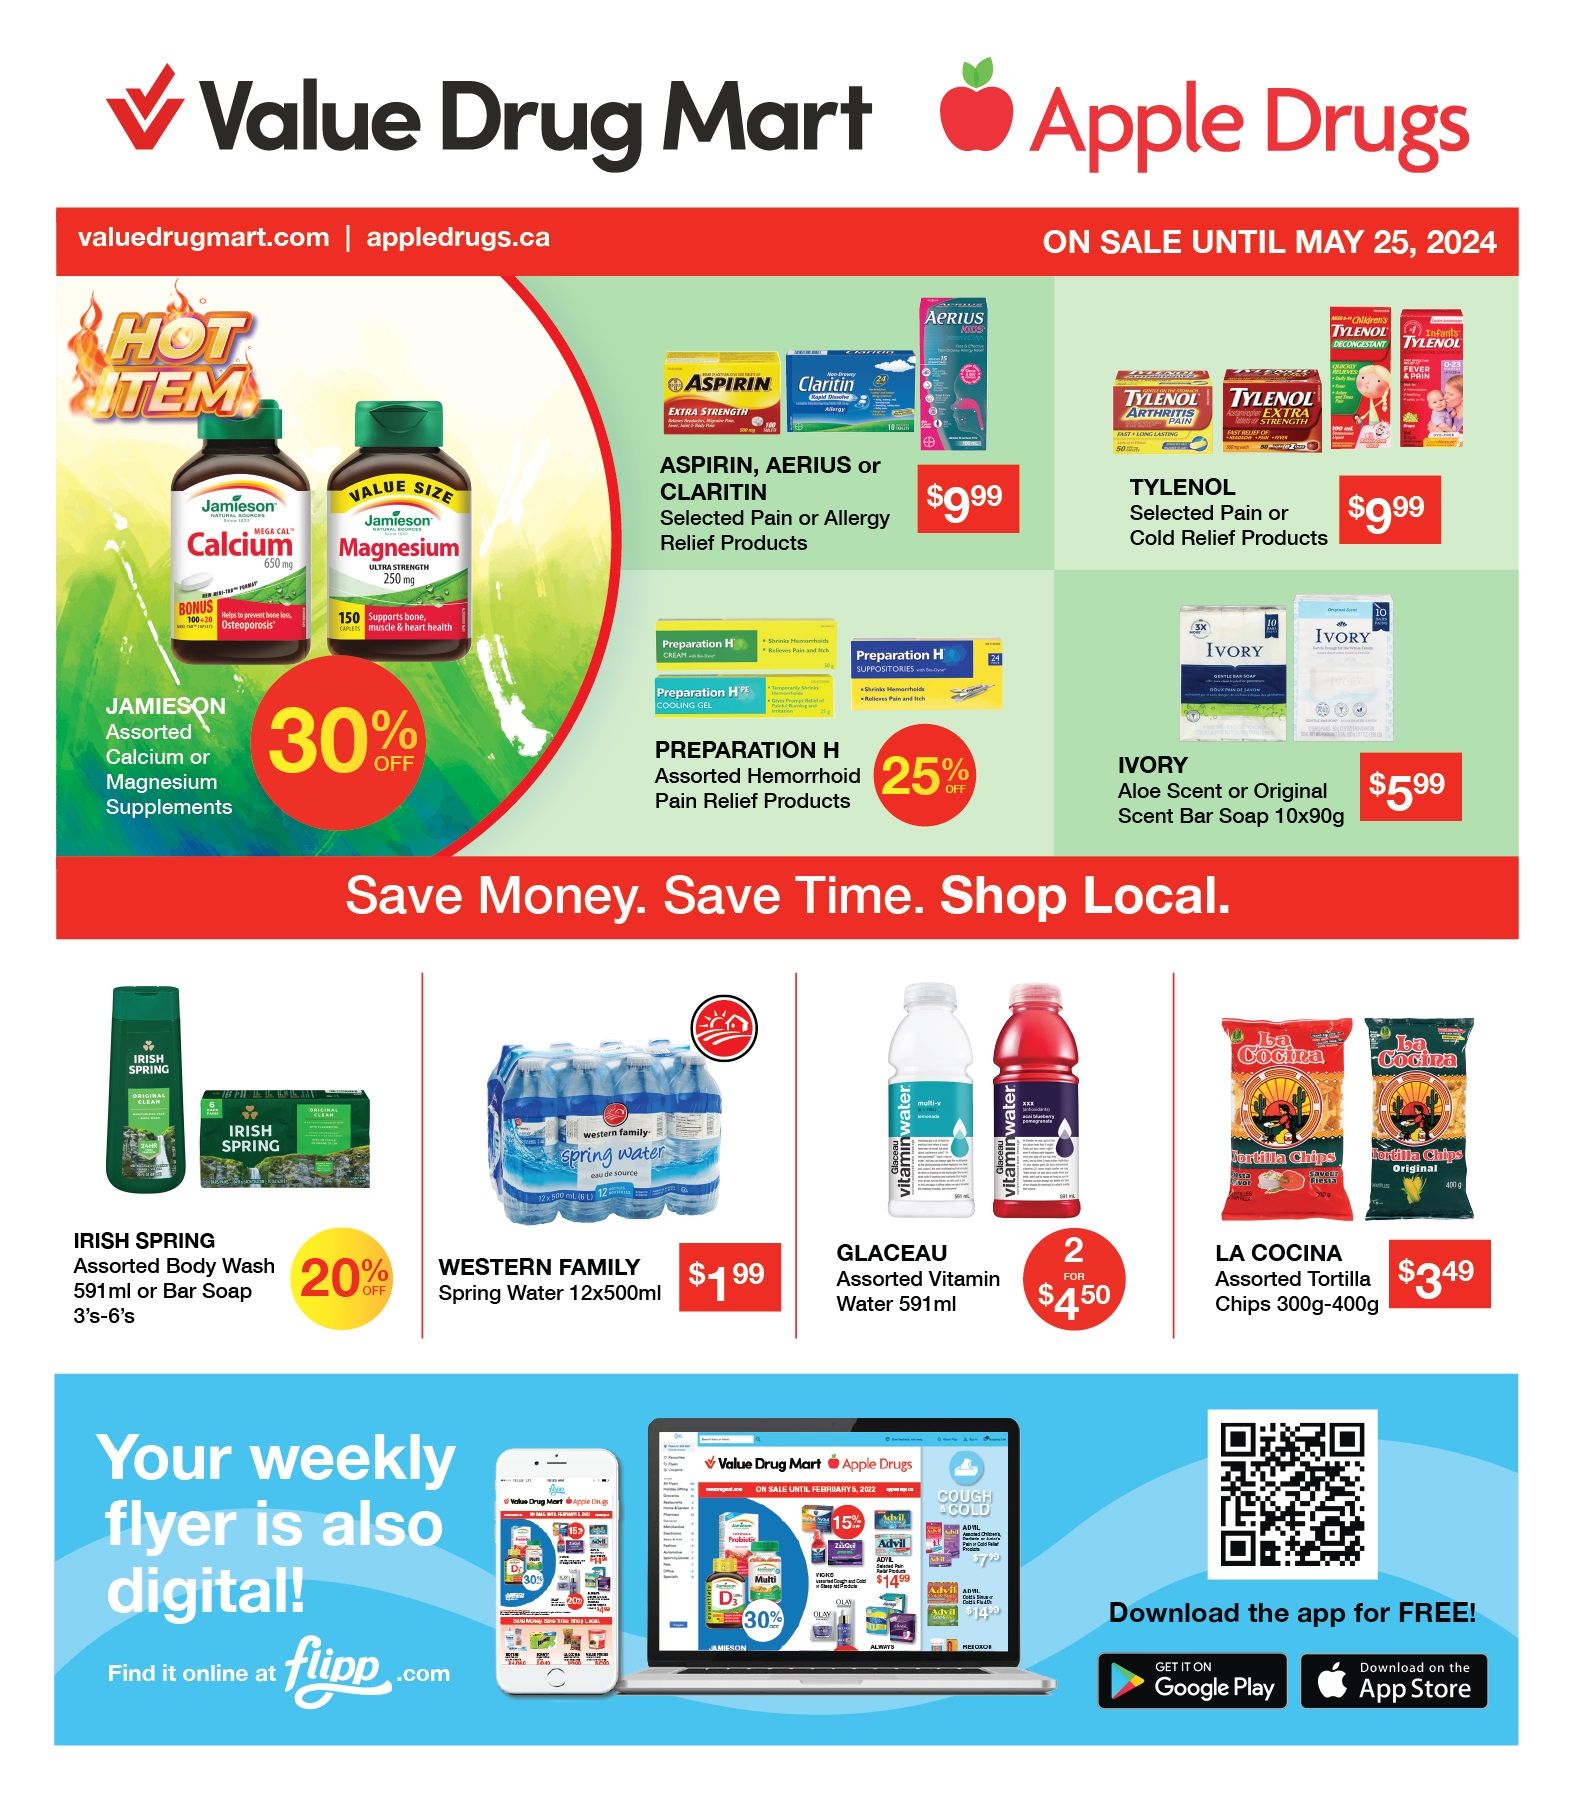 Value Drug Mart - 2 Weeks of Savings